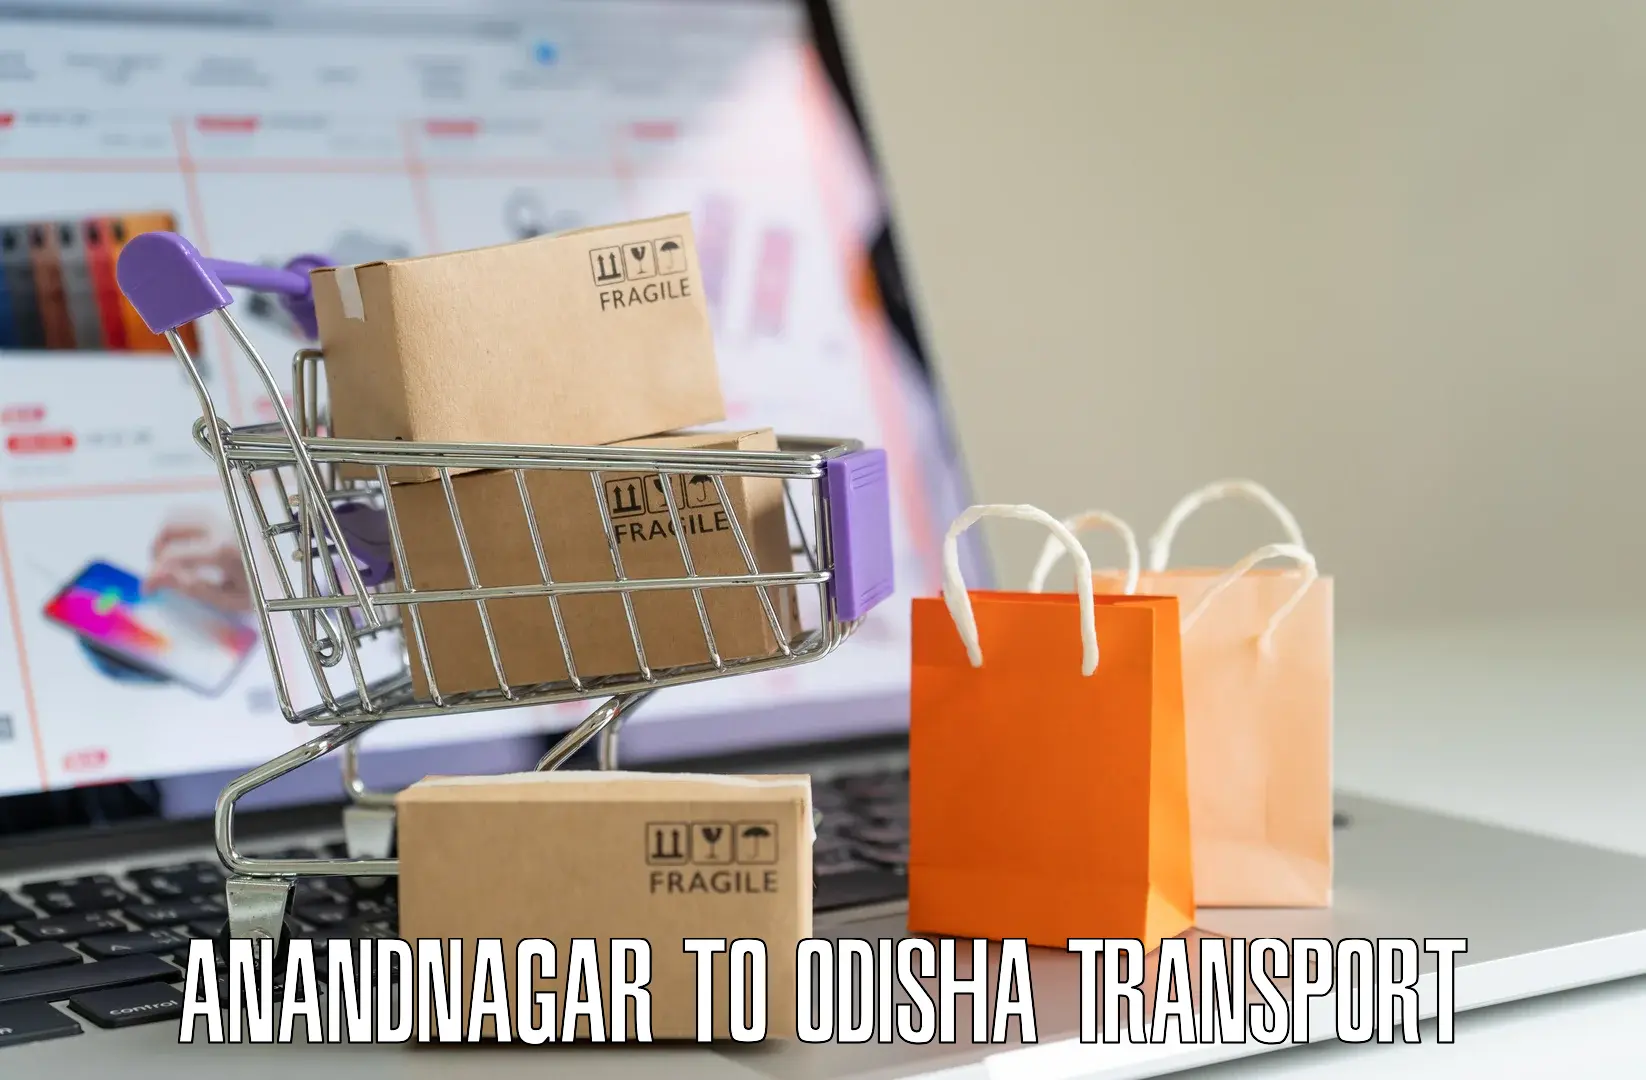 Bike shipping service Anandnagar to Basta